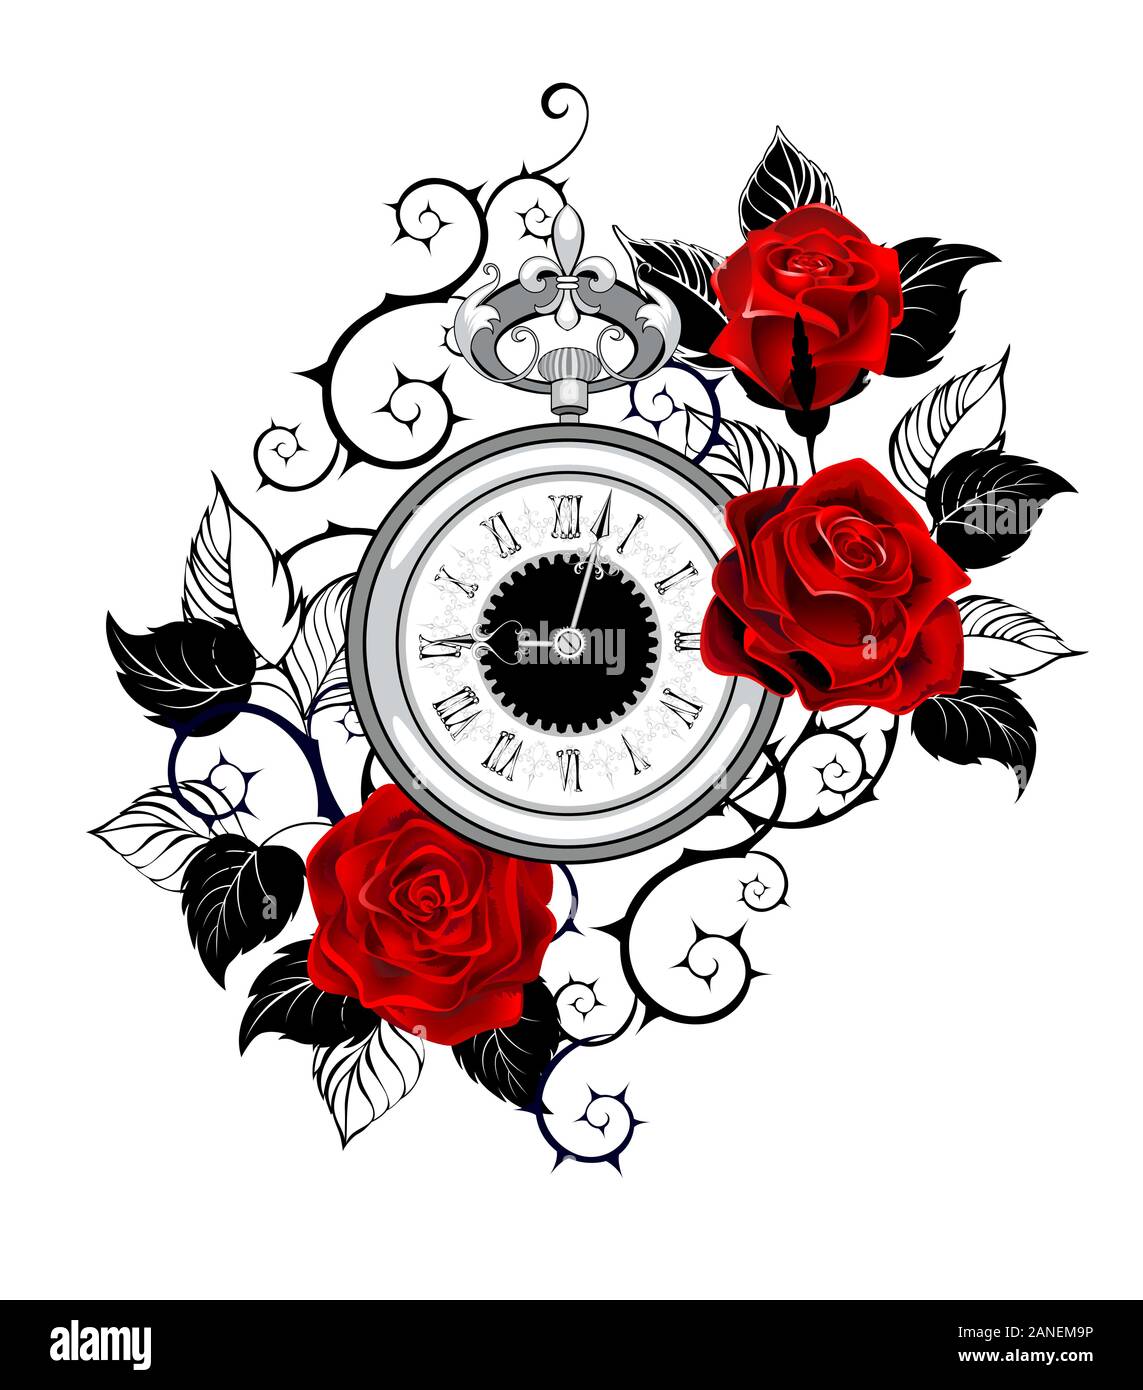 Contour, monochrome, d'horloges anciennes décorées avec des roses rouges avec contour noir feuilles et tiges. Style de tatouage. Illustration de Vecteur